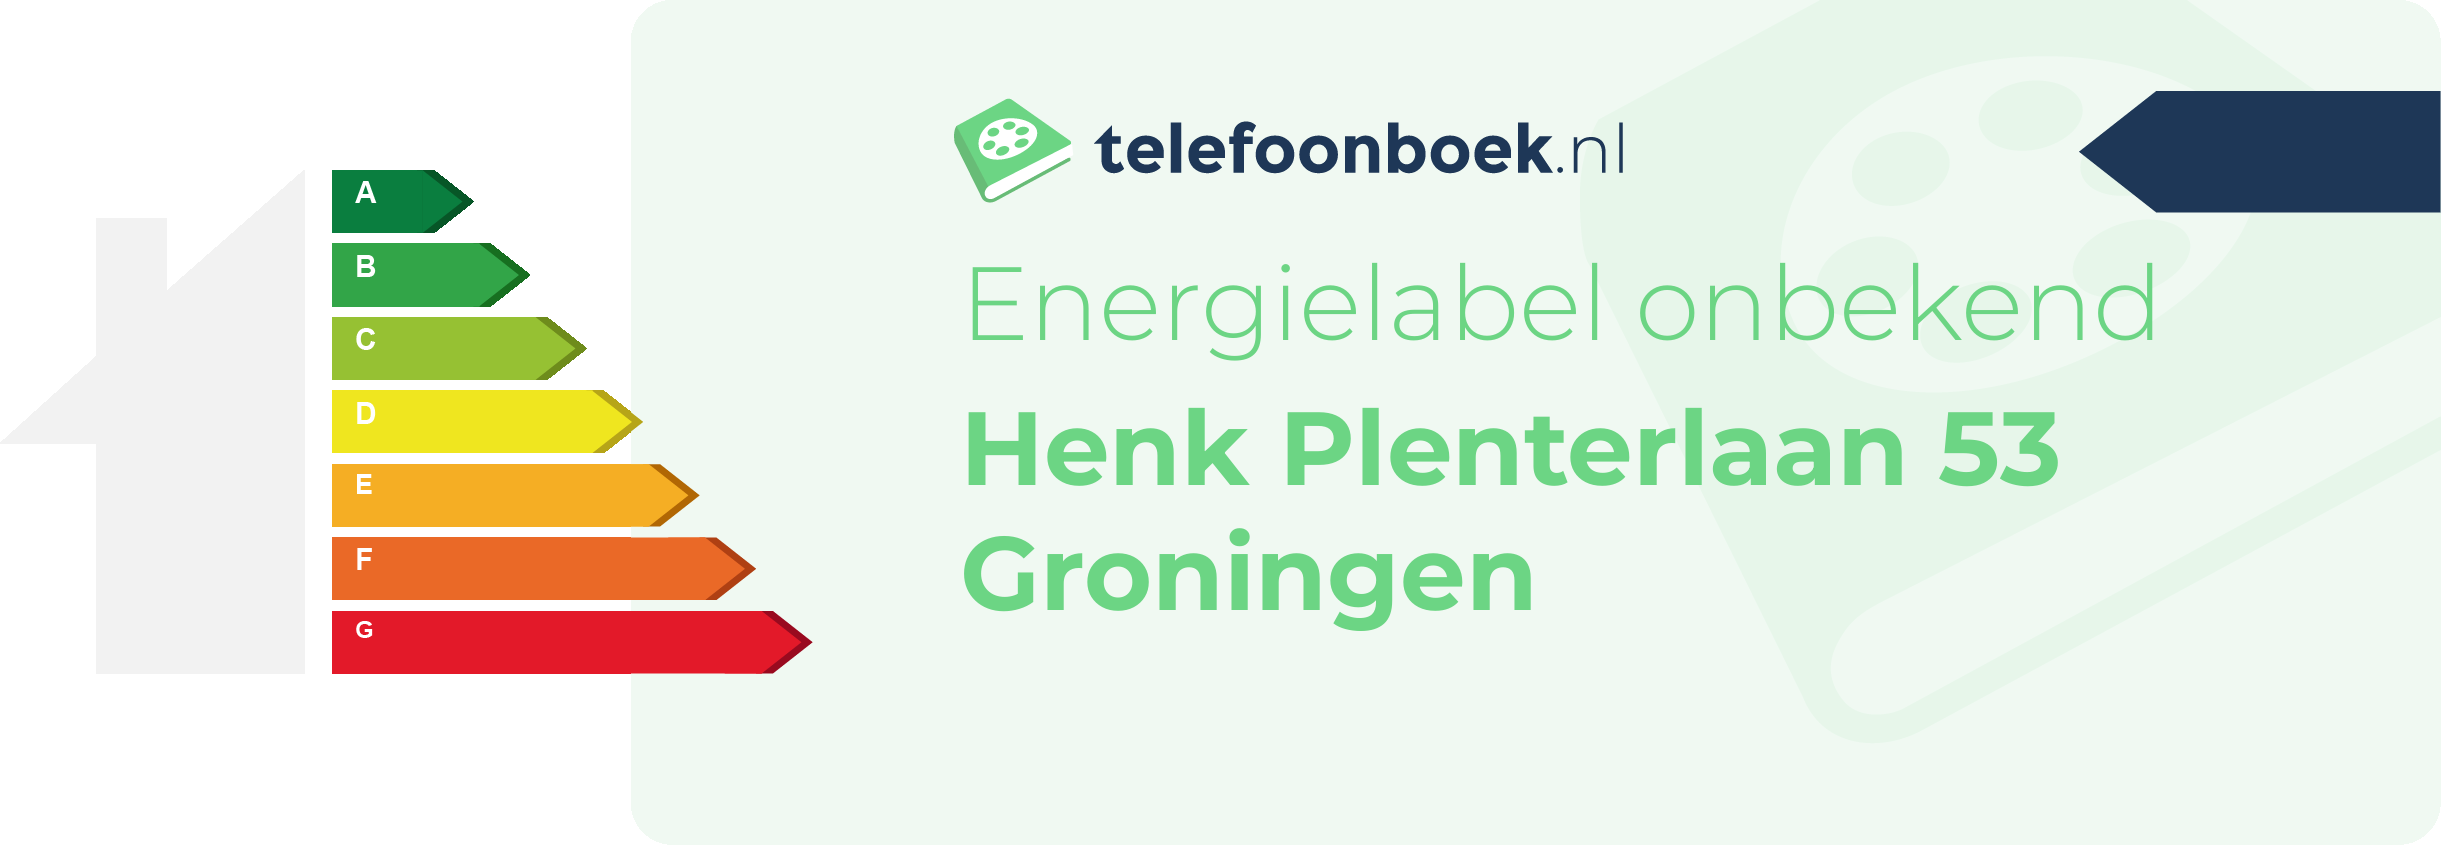 Energielabel Henk Plenterlaan 53 Groningen